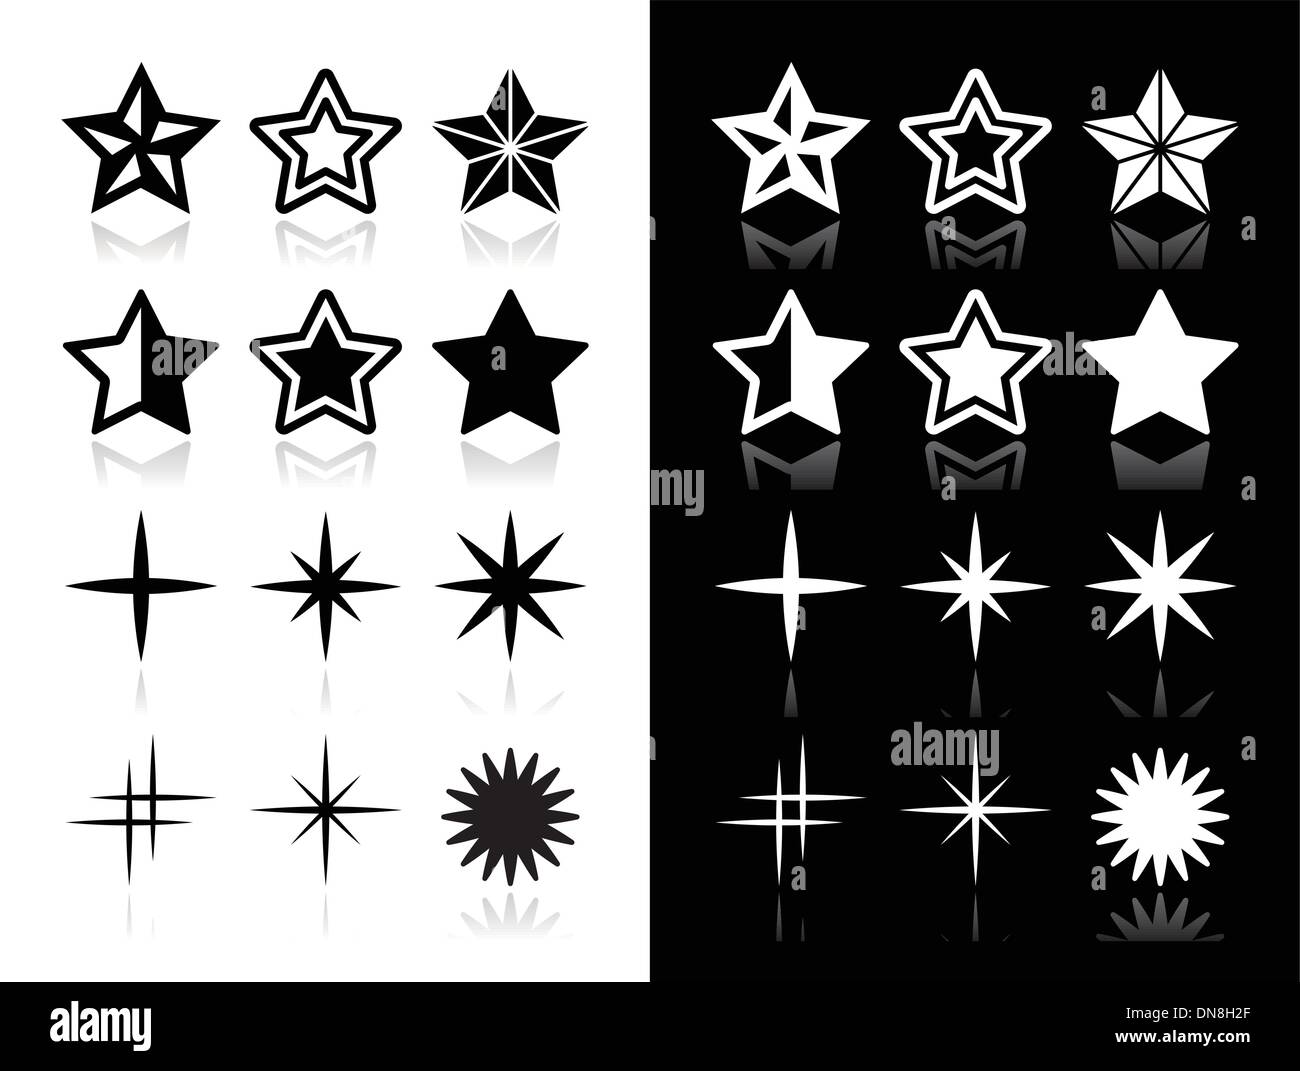 Sterne-Icons mit Schatten auf schwarzen und weißen Hintergrund Stock Vektor